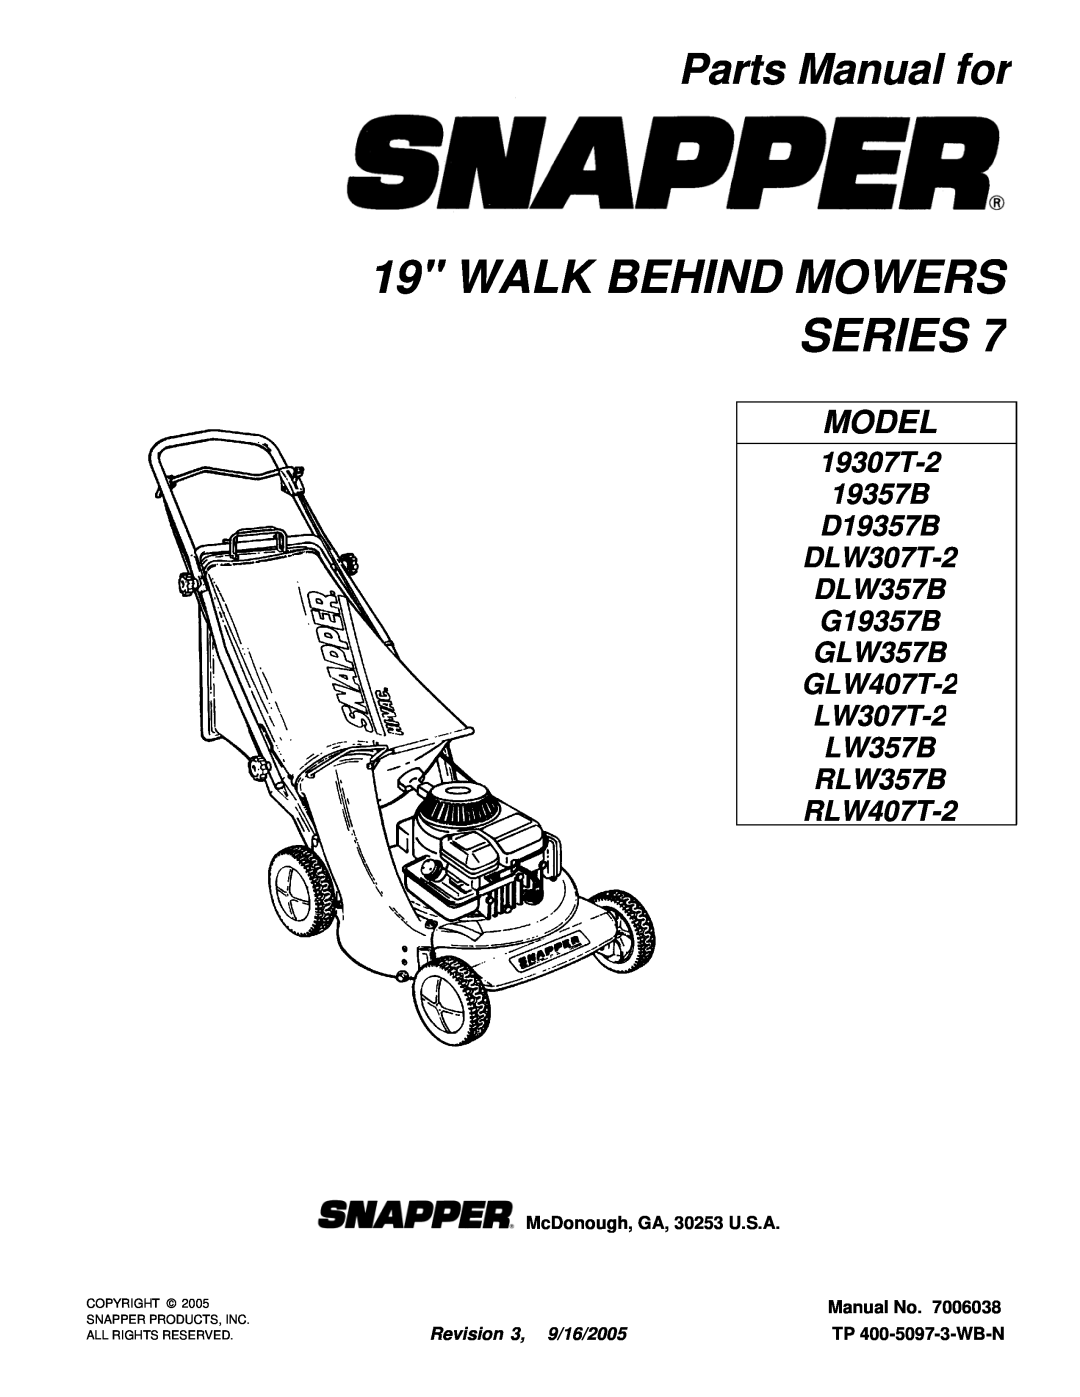 Snapper DLW307T-2, D19357B manual Parts Manual for, McDonough, GA, 30253 U.S.A, Manual No, Revision 3, 9/16/2005, Model 